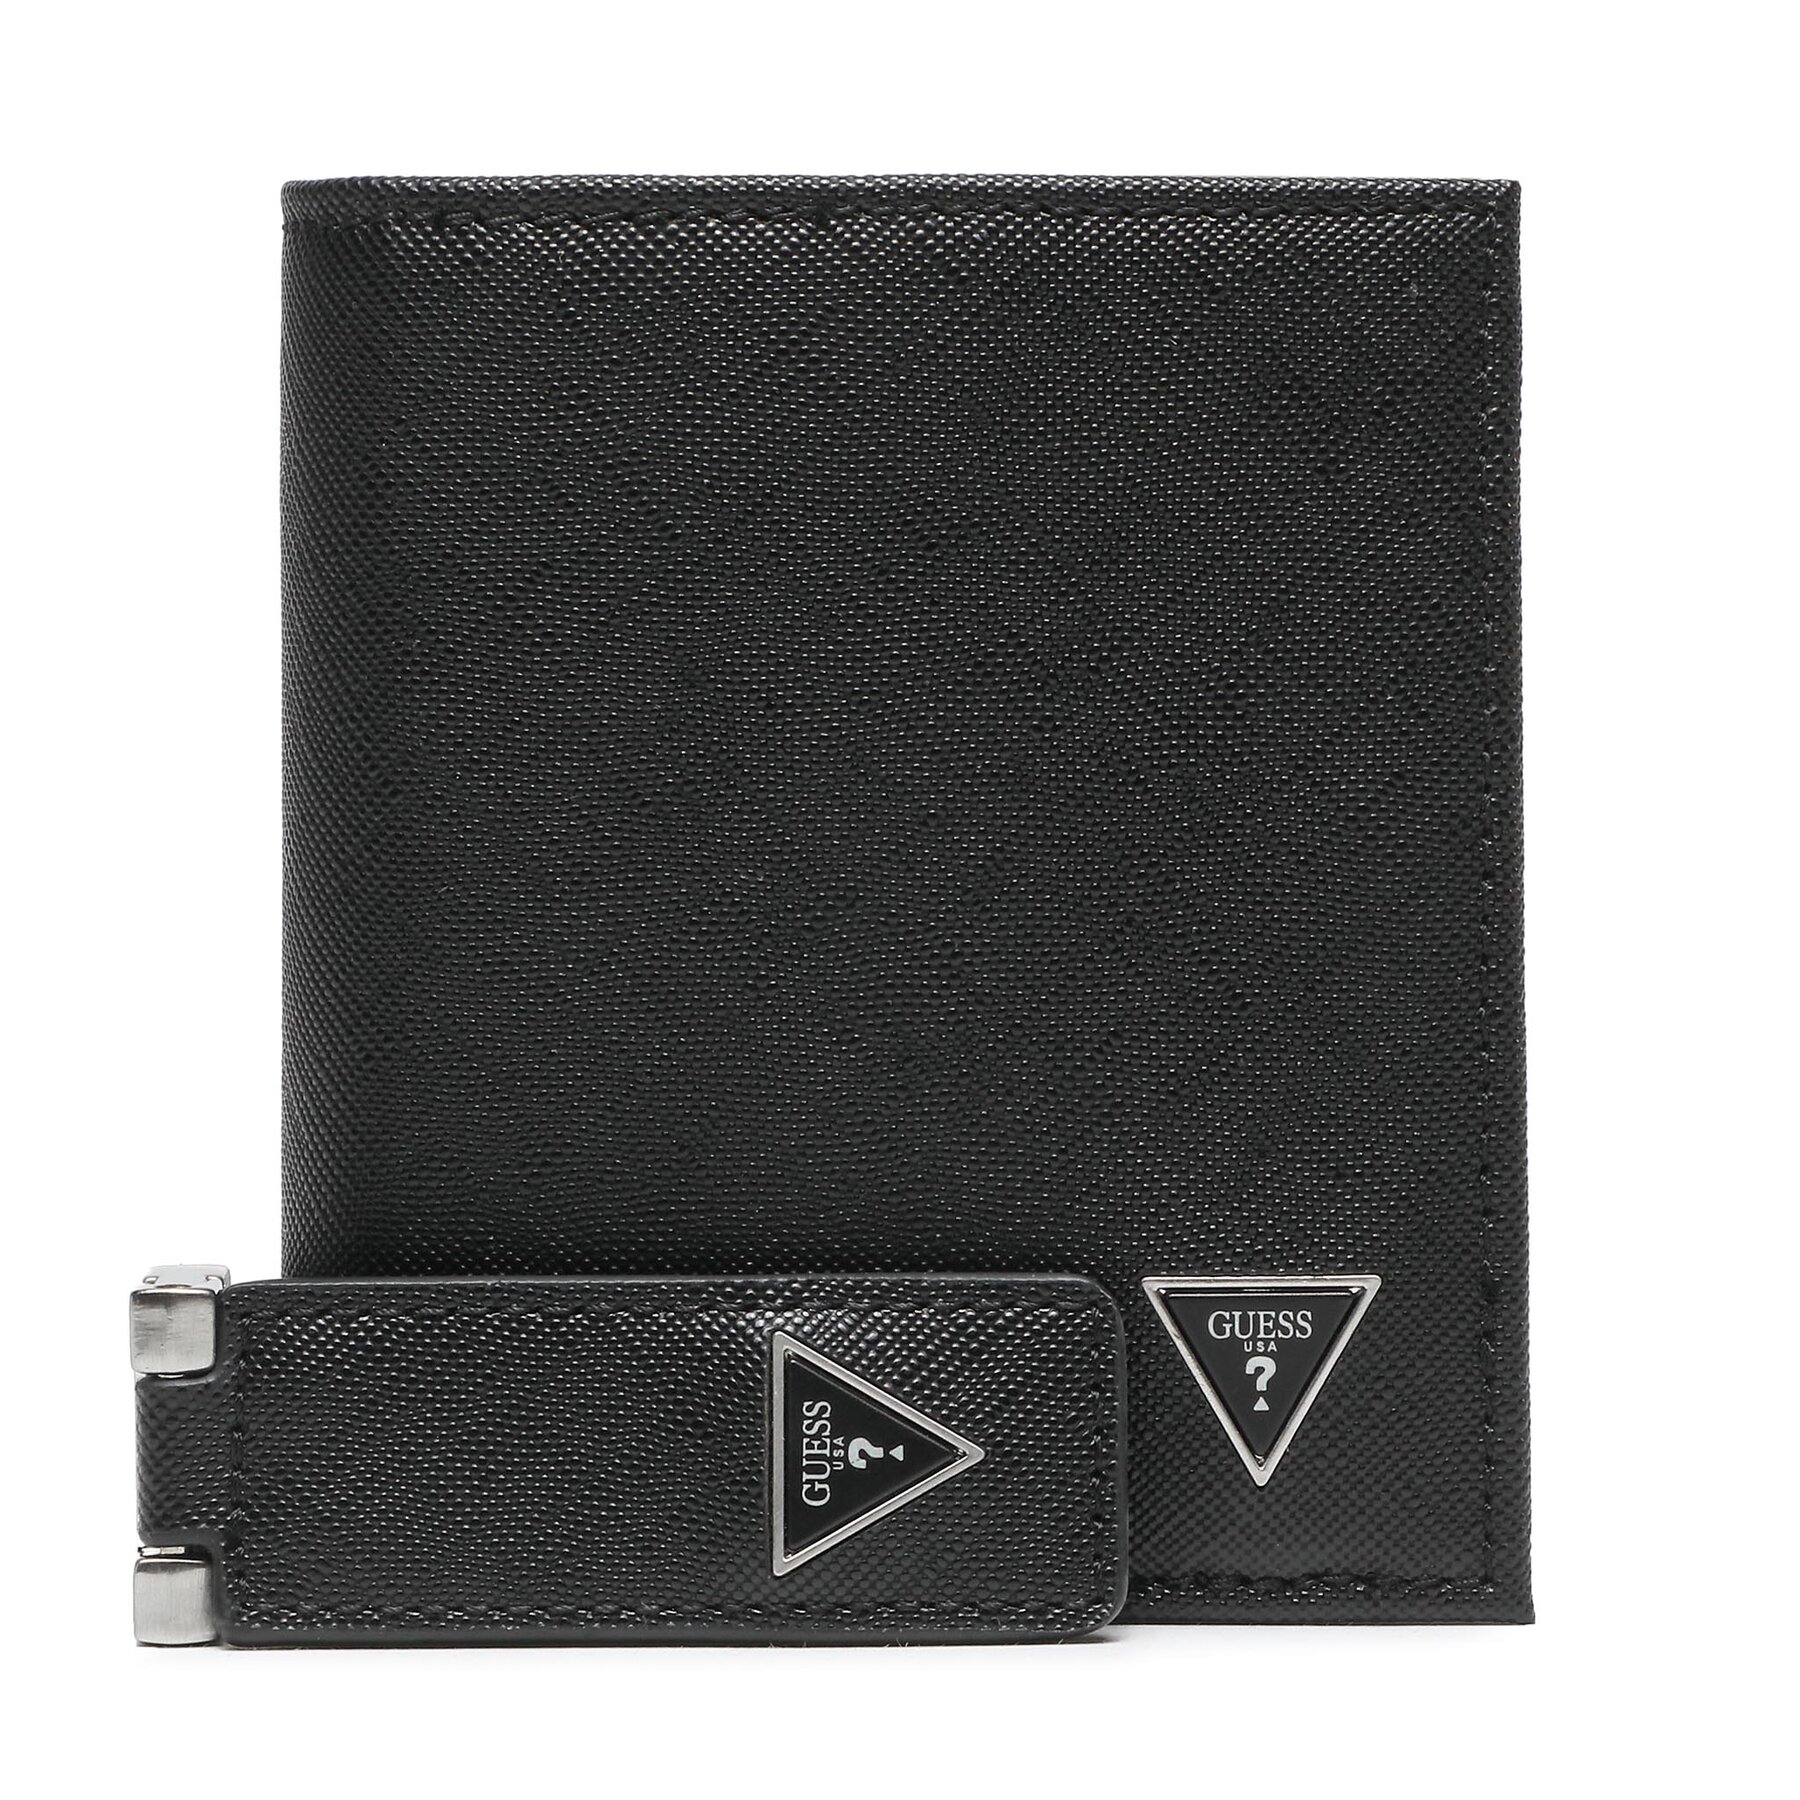 Set denarnica in obesek za ključe Guess GFBOXM P3303 BLA